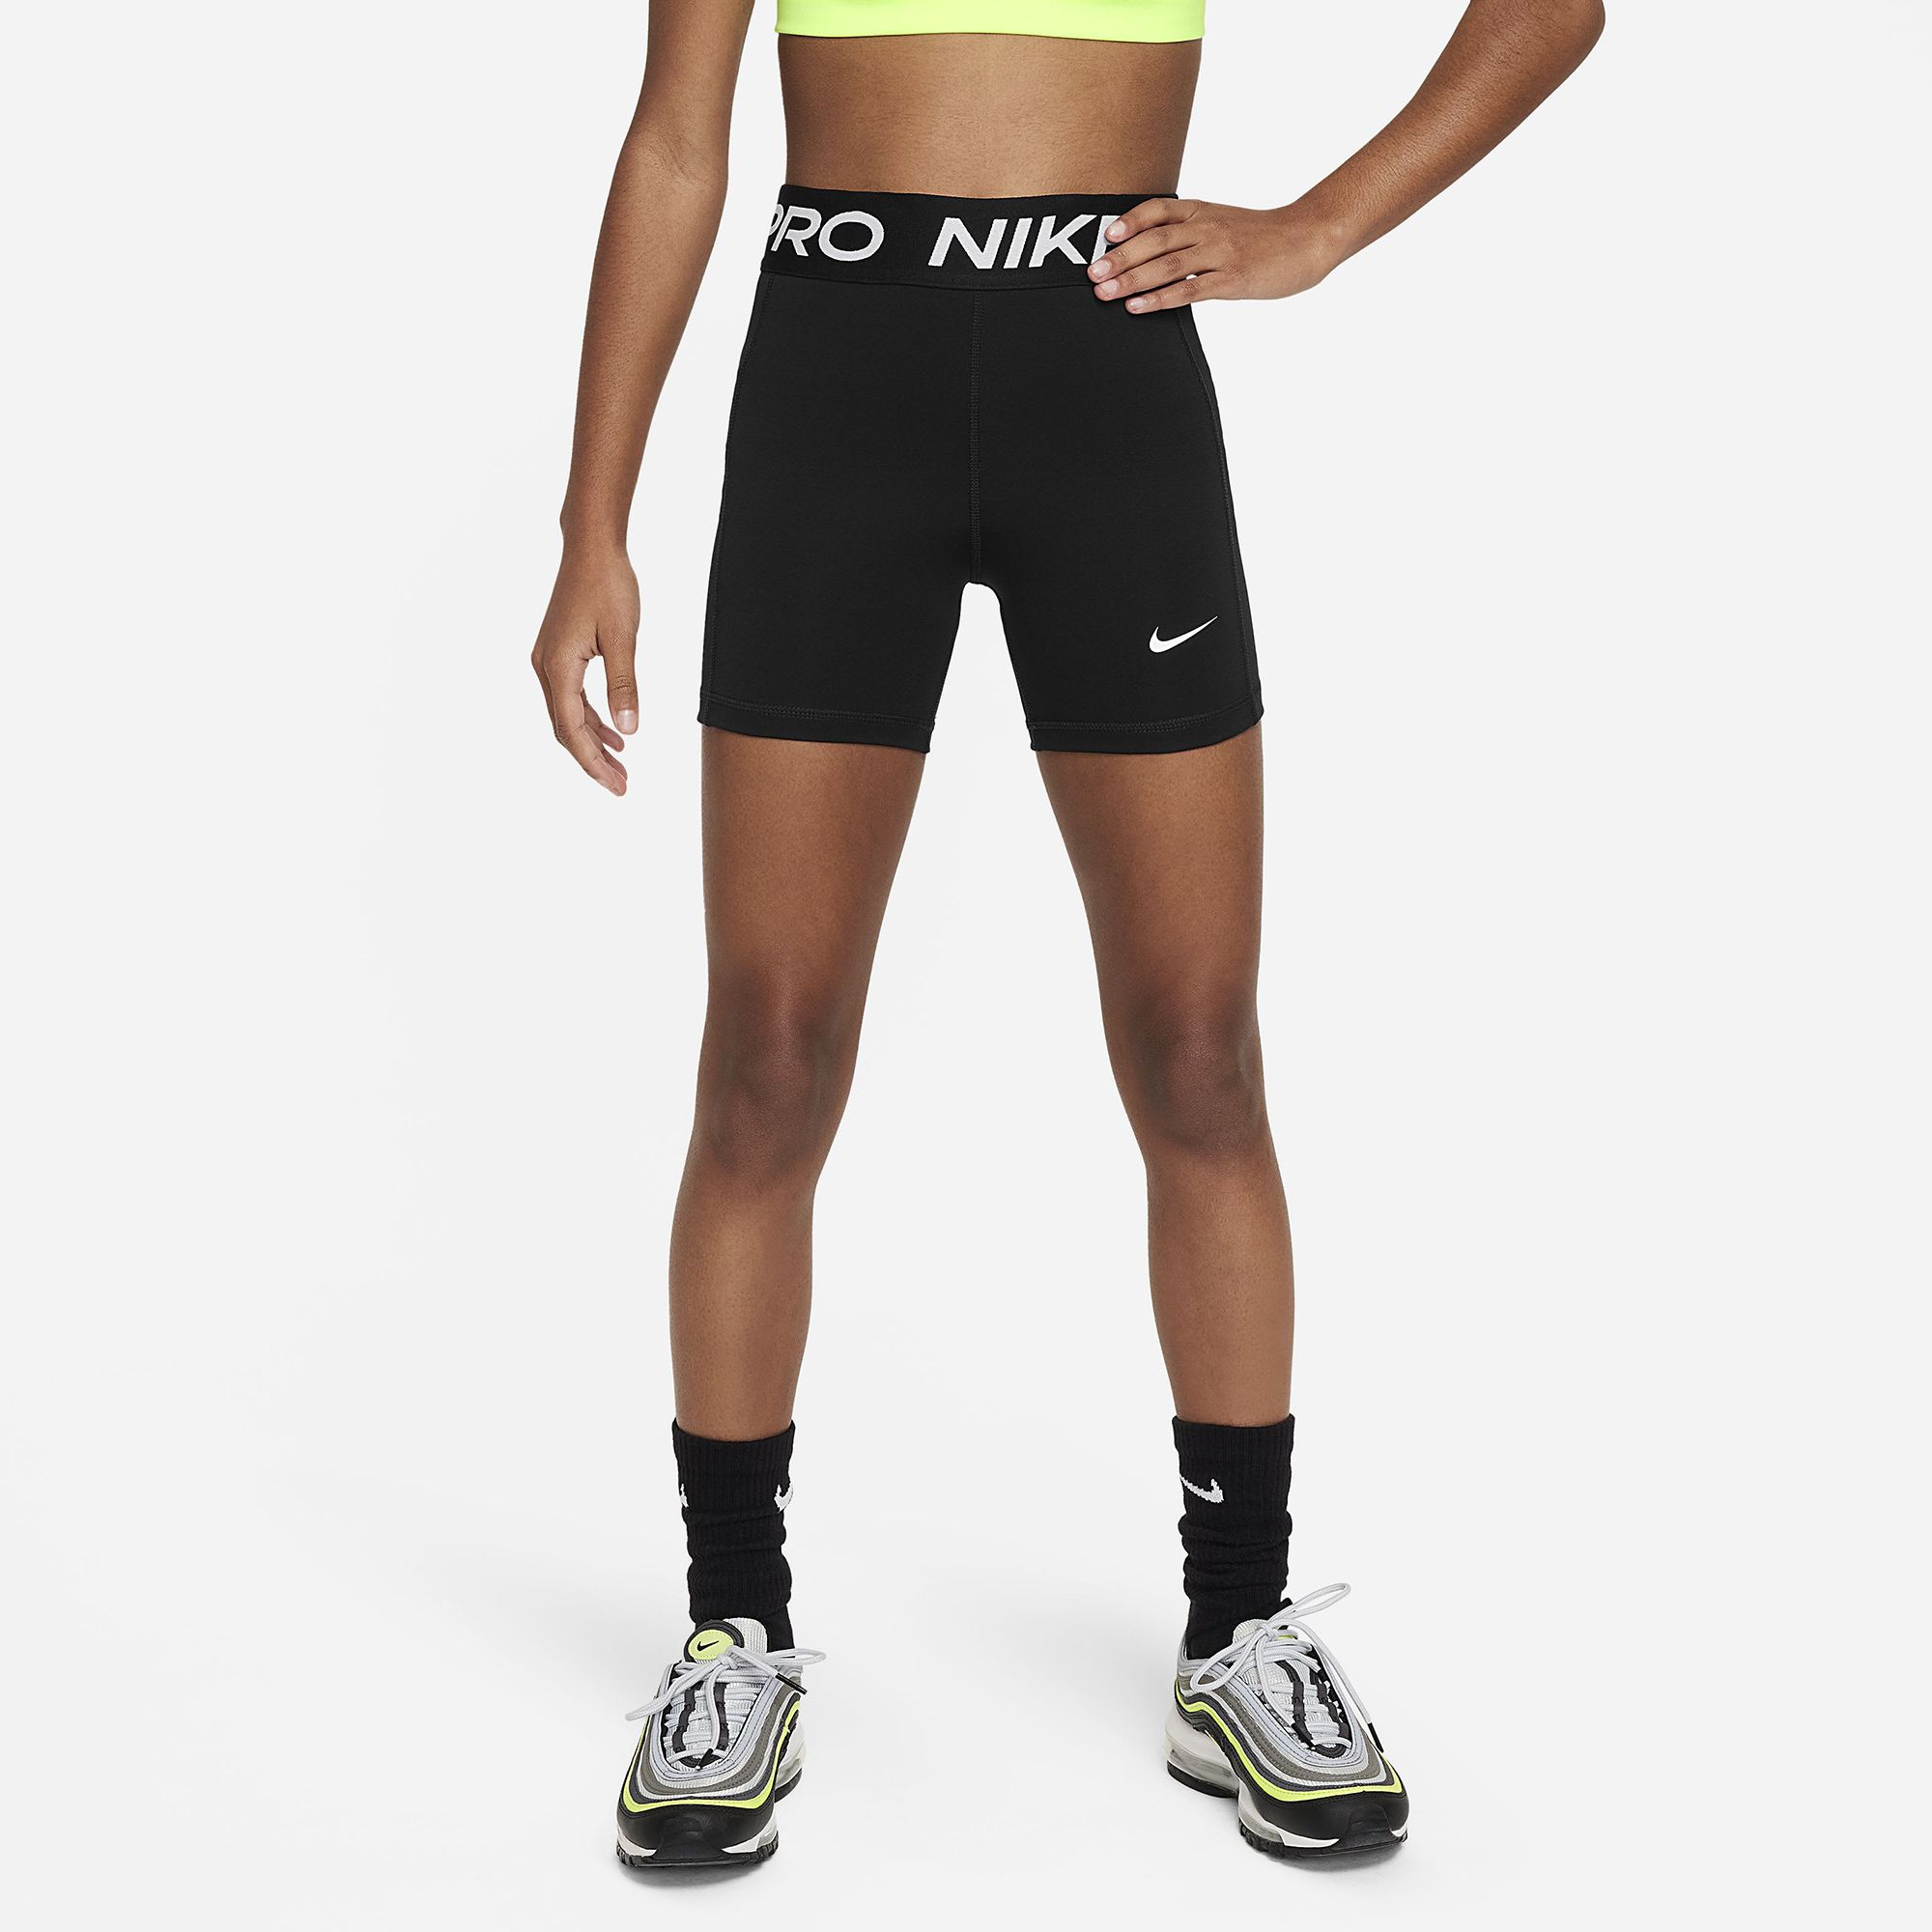 Nike Girls' Pro Period Leak Protection Shorts